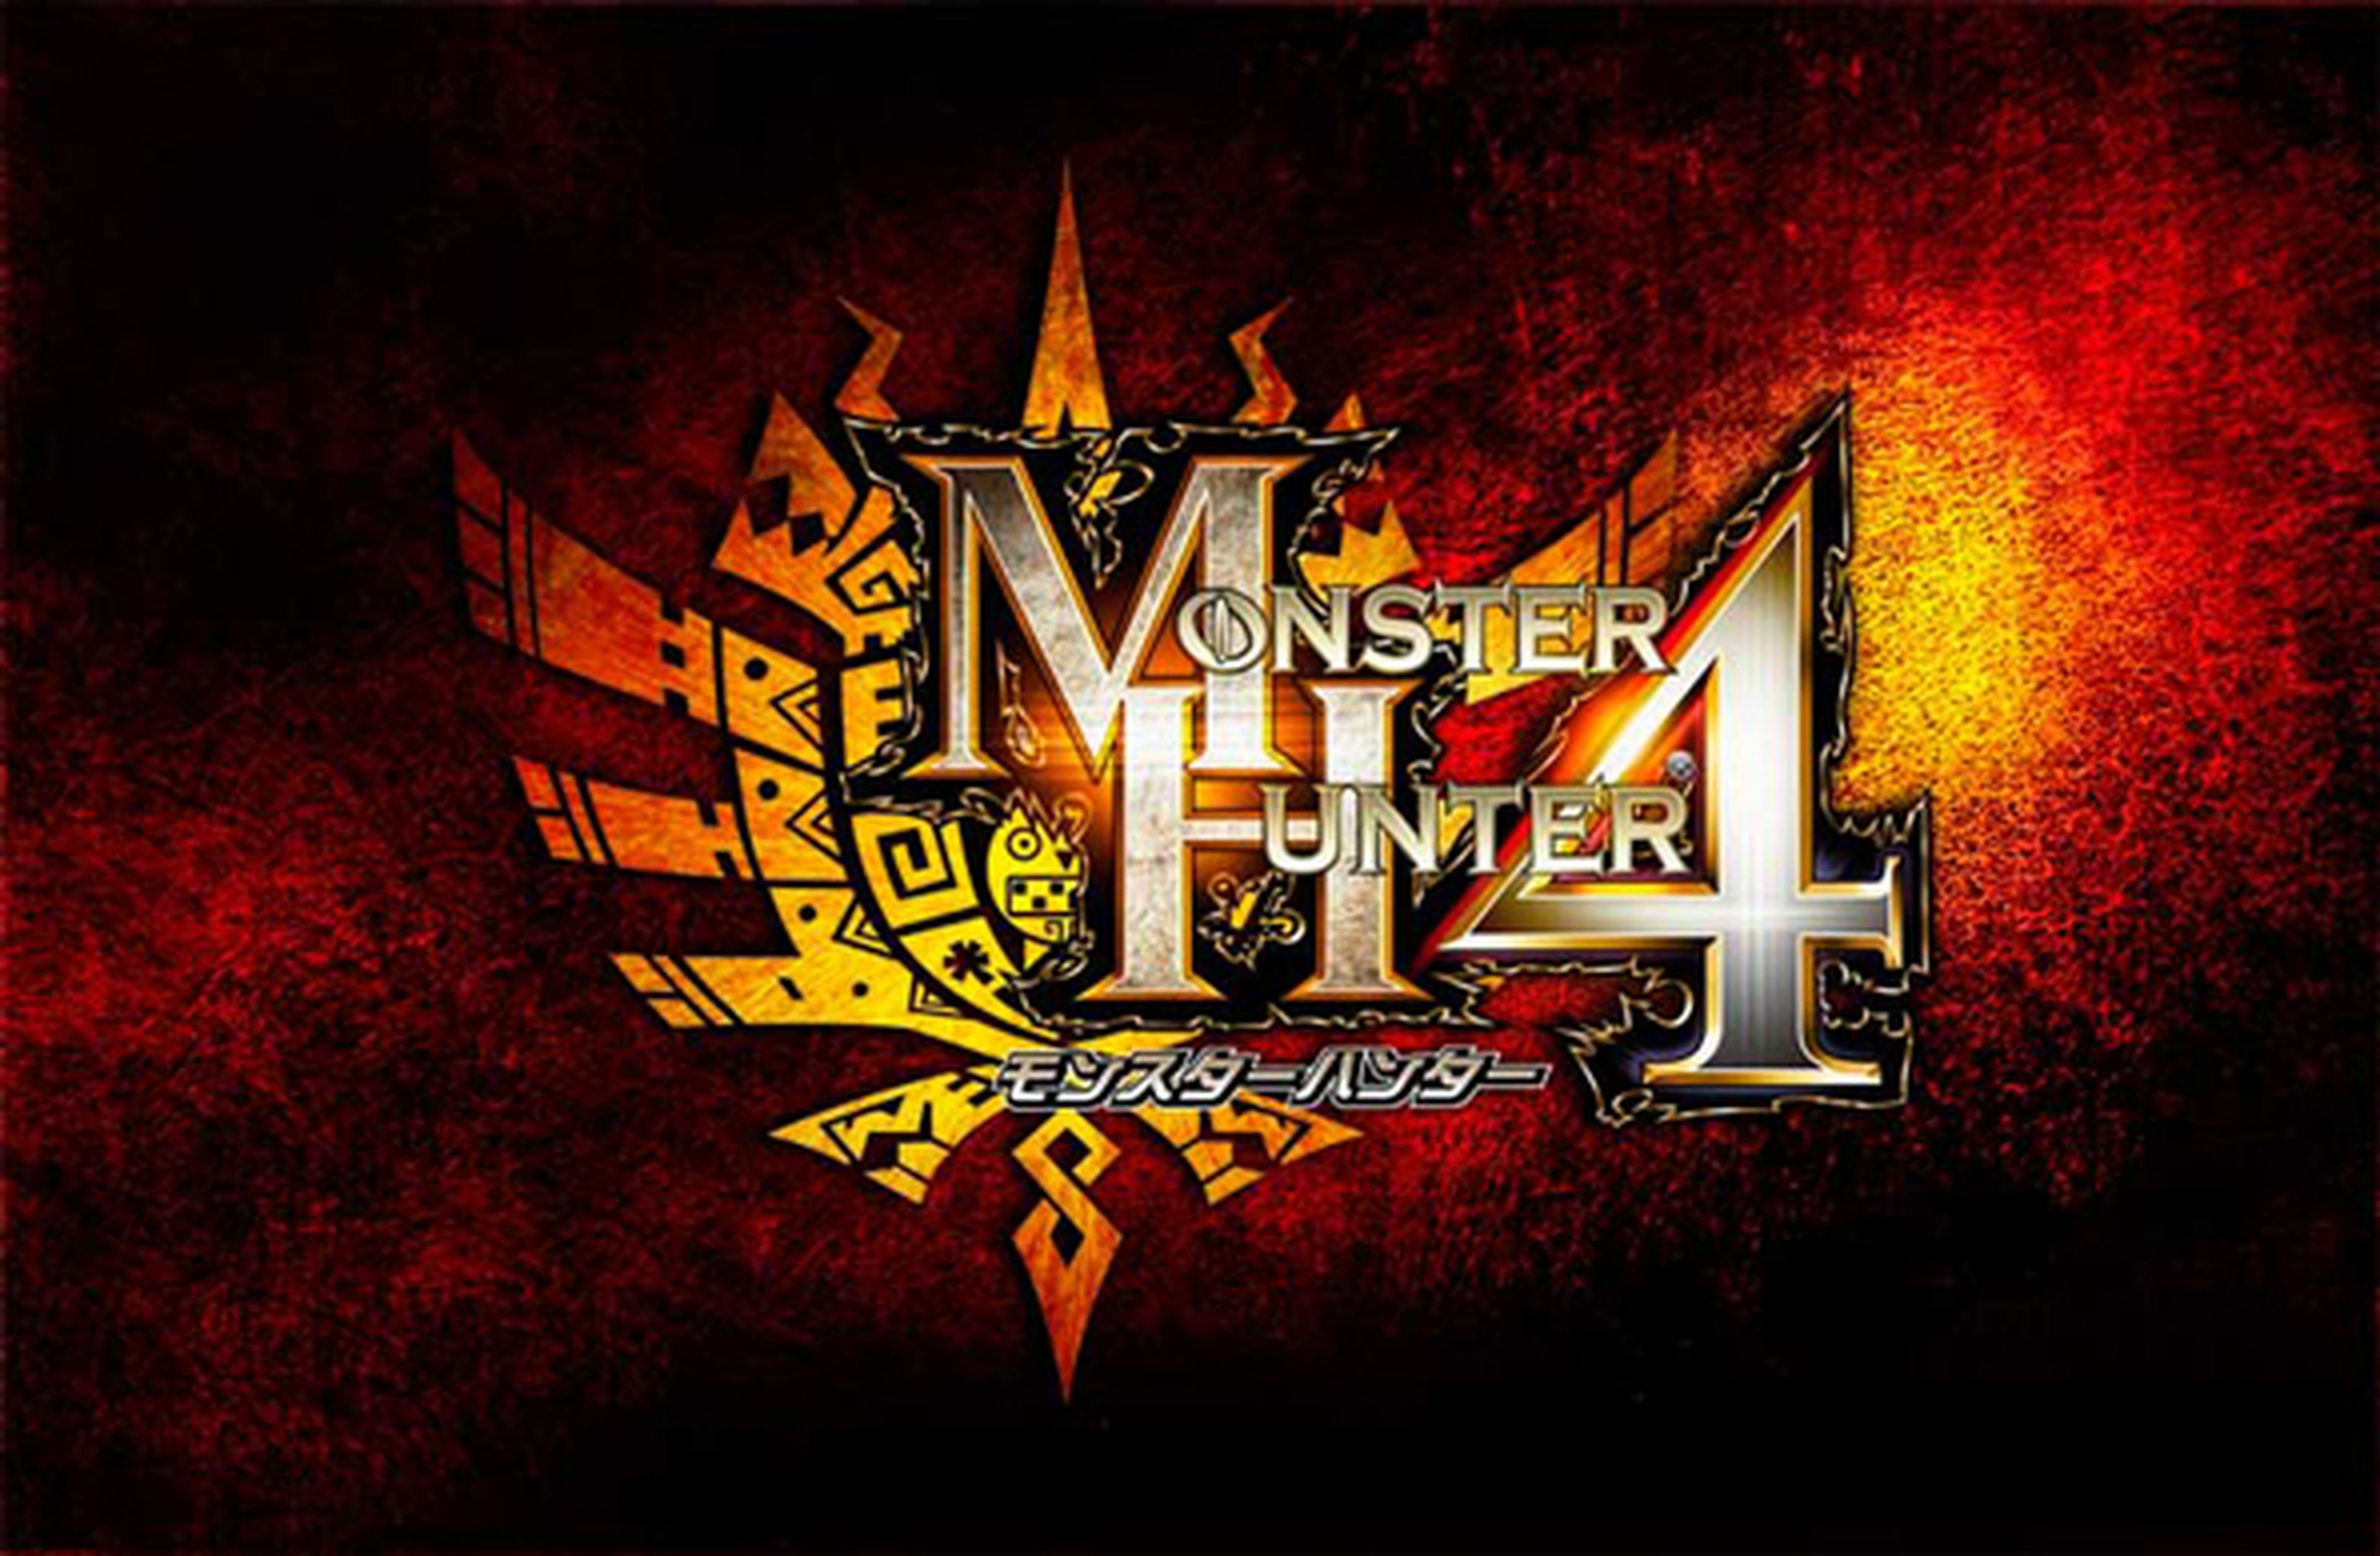 Tráiler de Monster Hunter 4